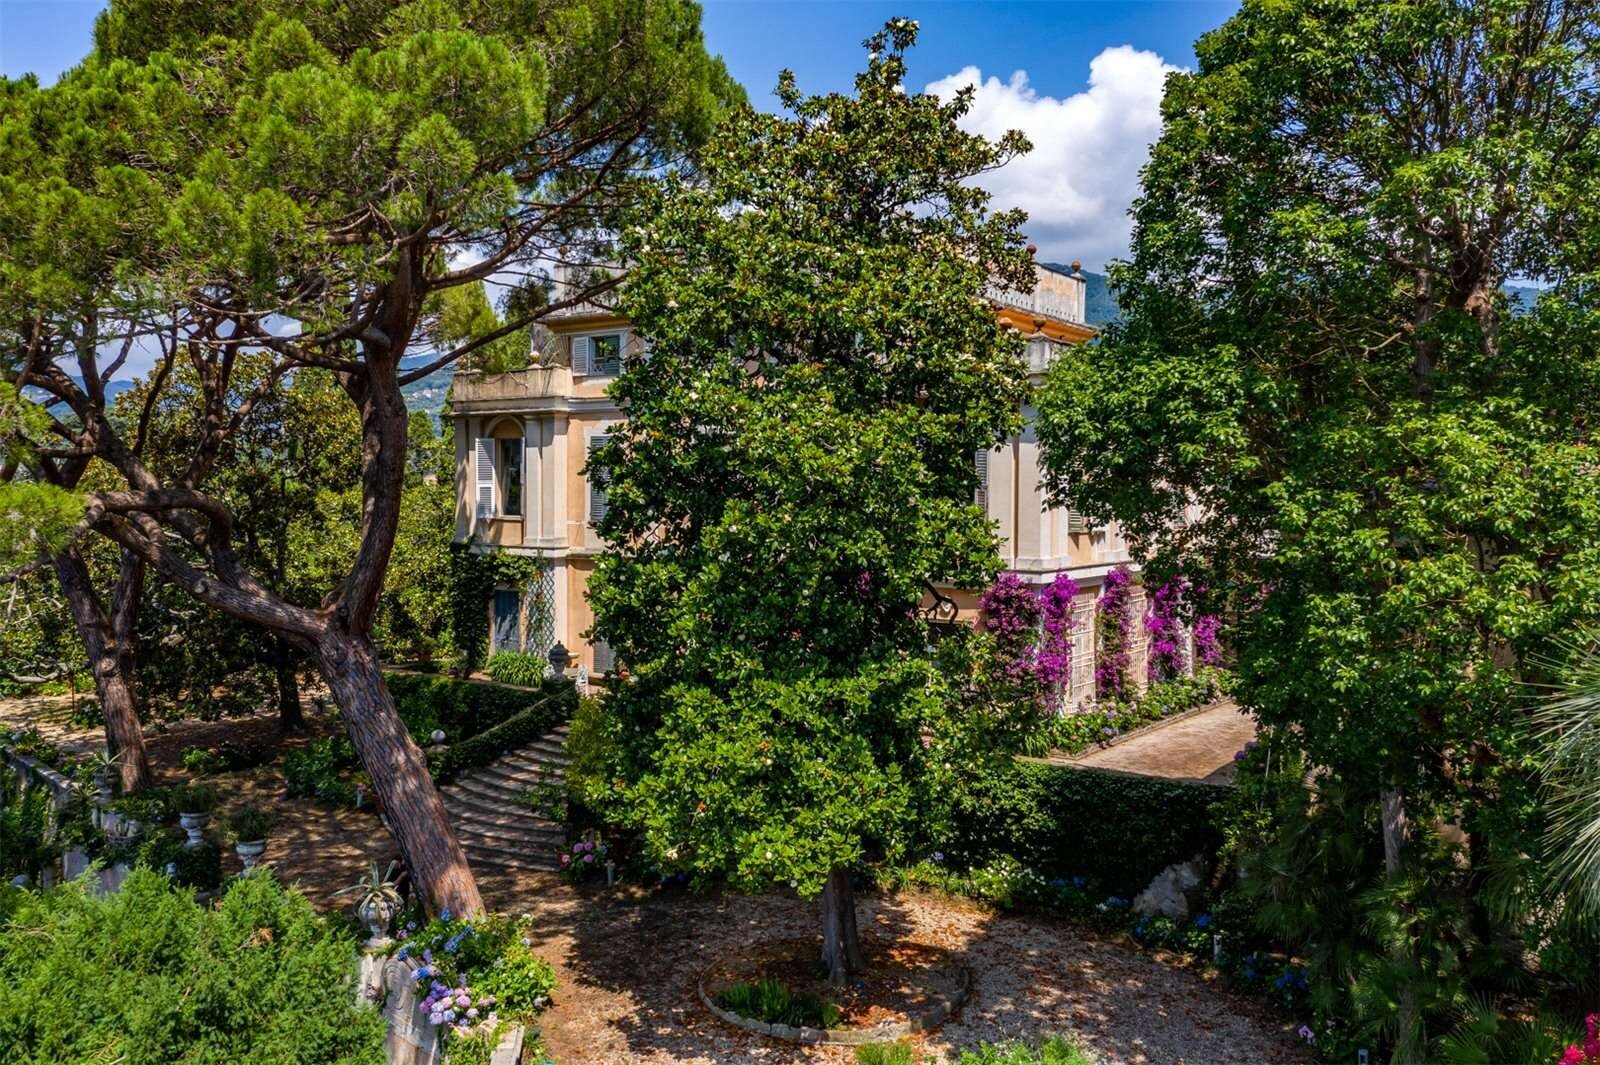 Francis York Villa Le Magnolie Dreamy Italian Riviera Villa Overlooking Portofino 9.jpg